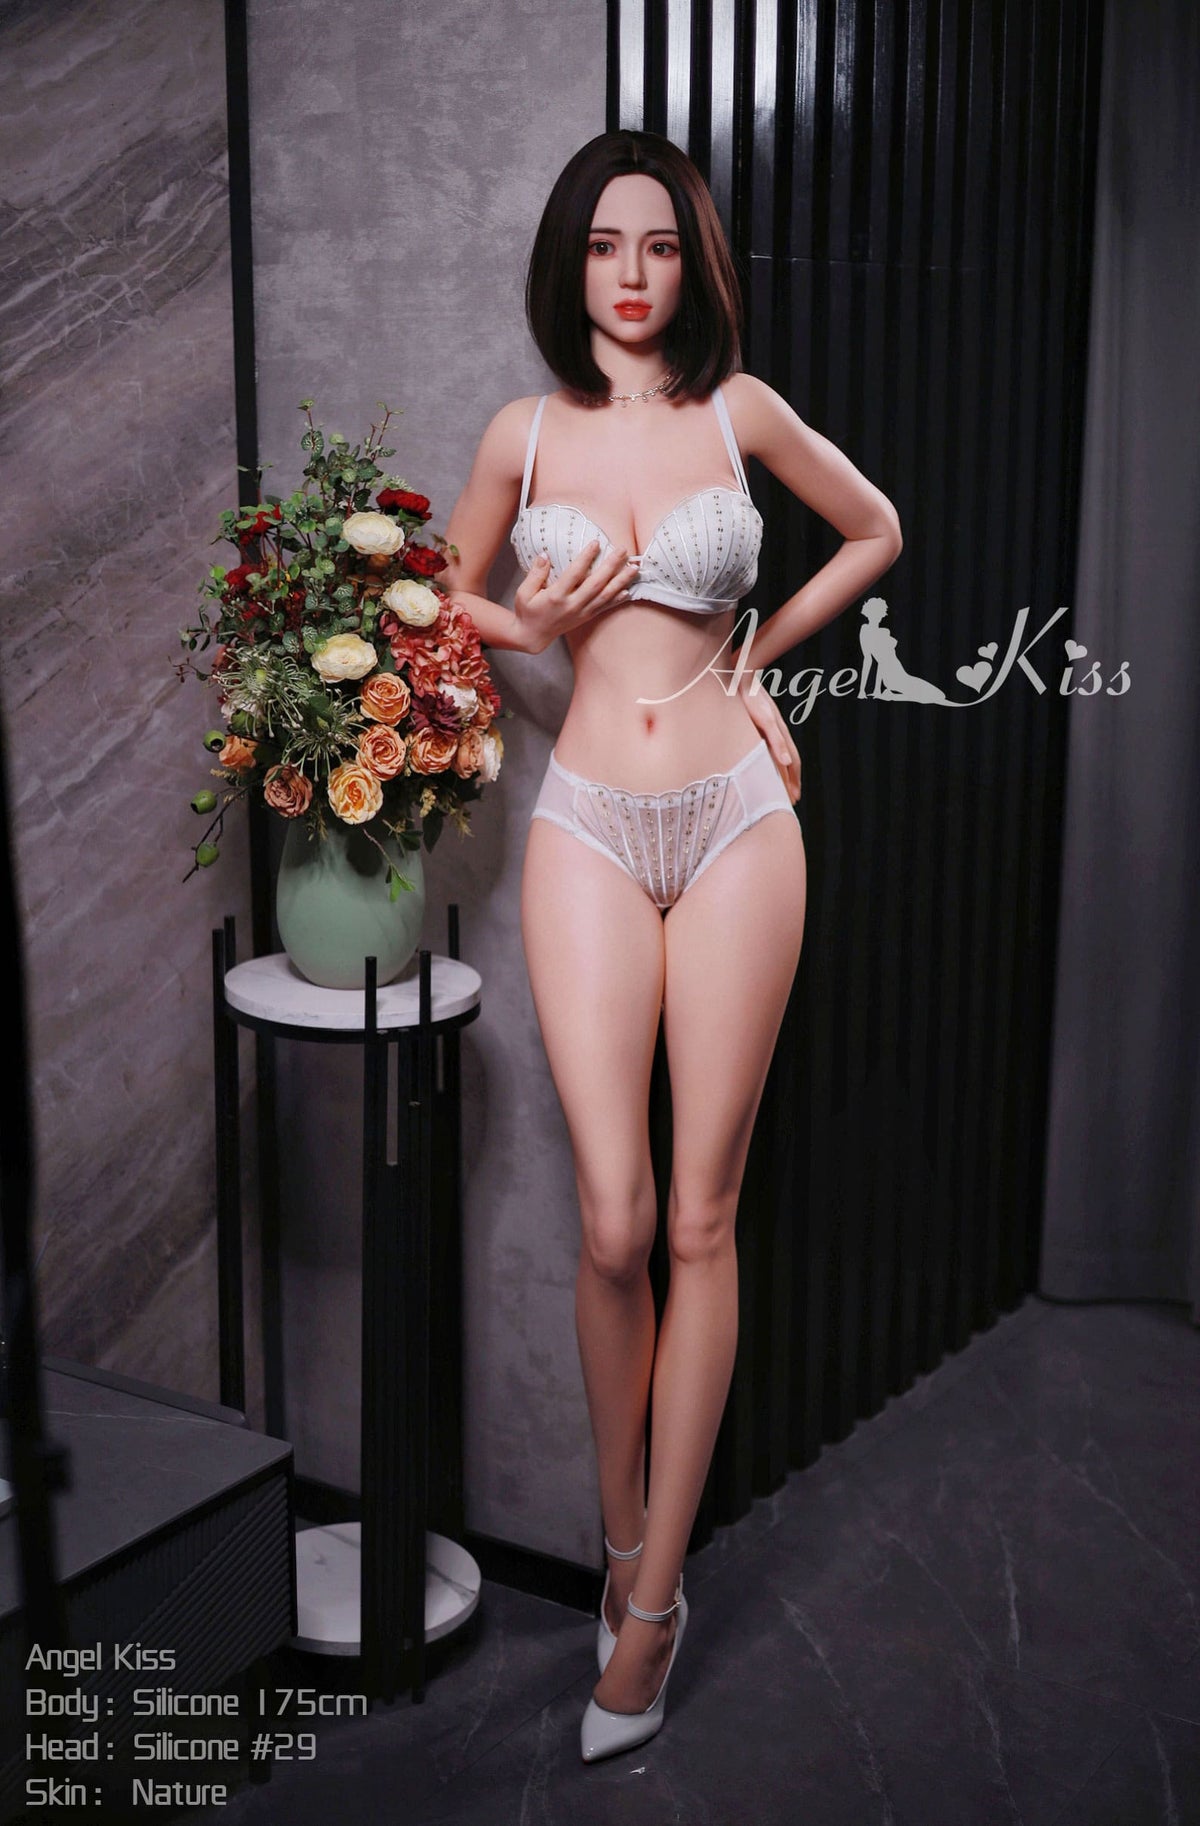 Lin: Thai Beauty Sex Doll